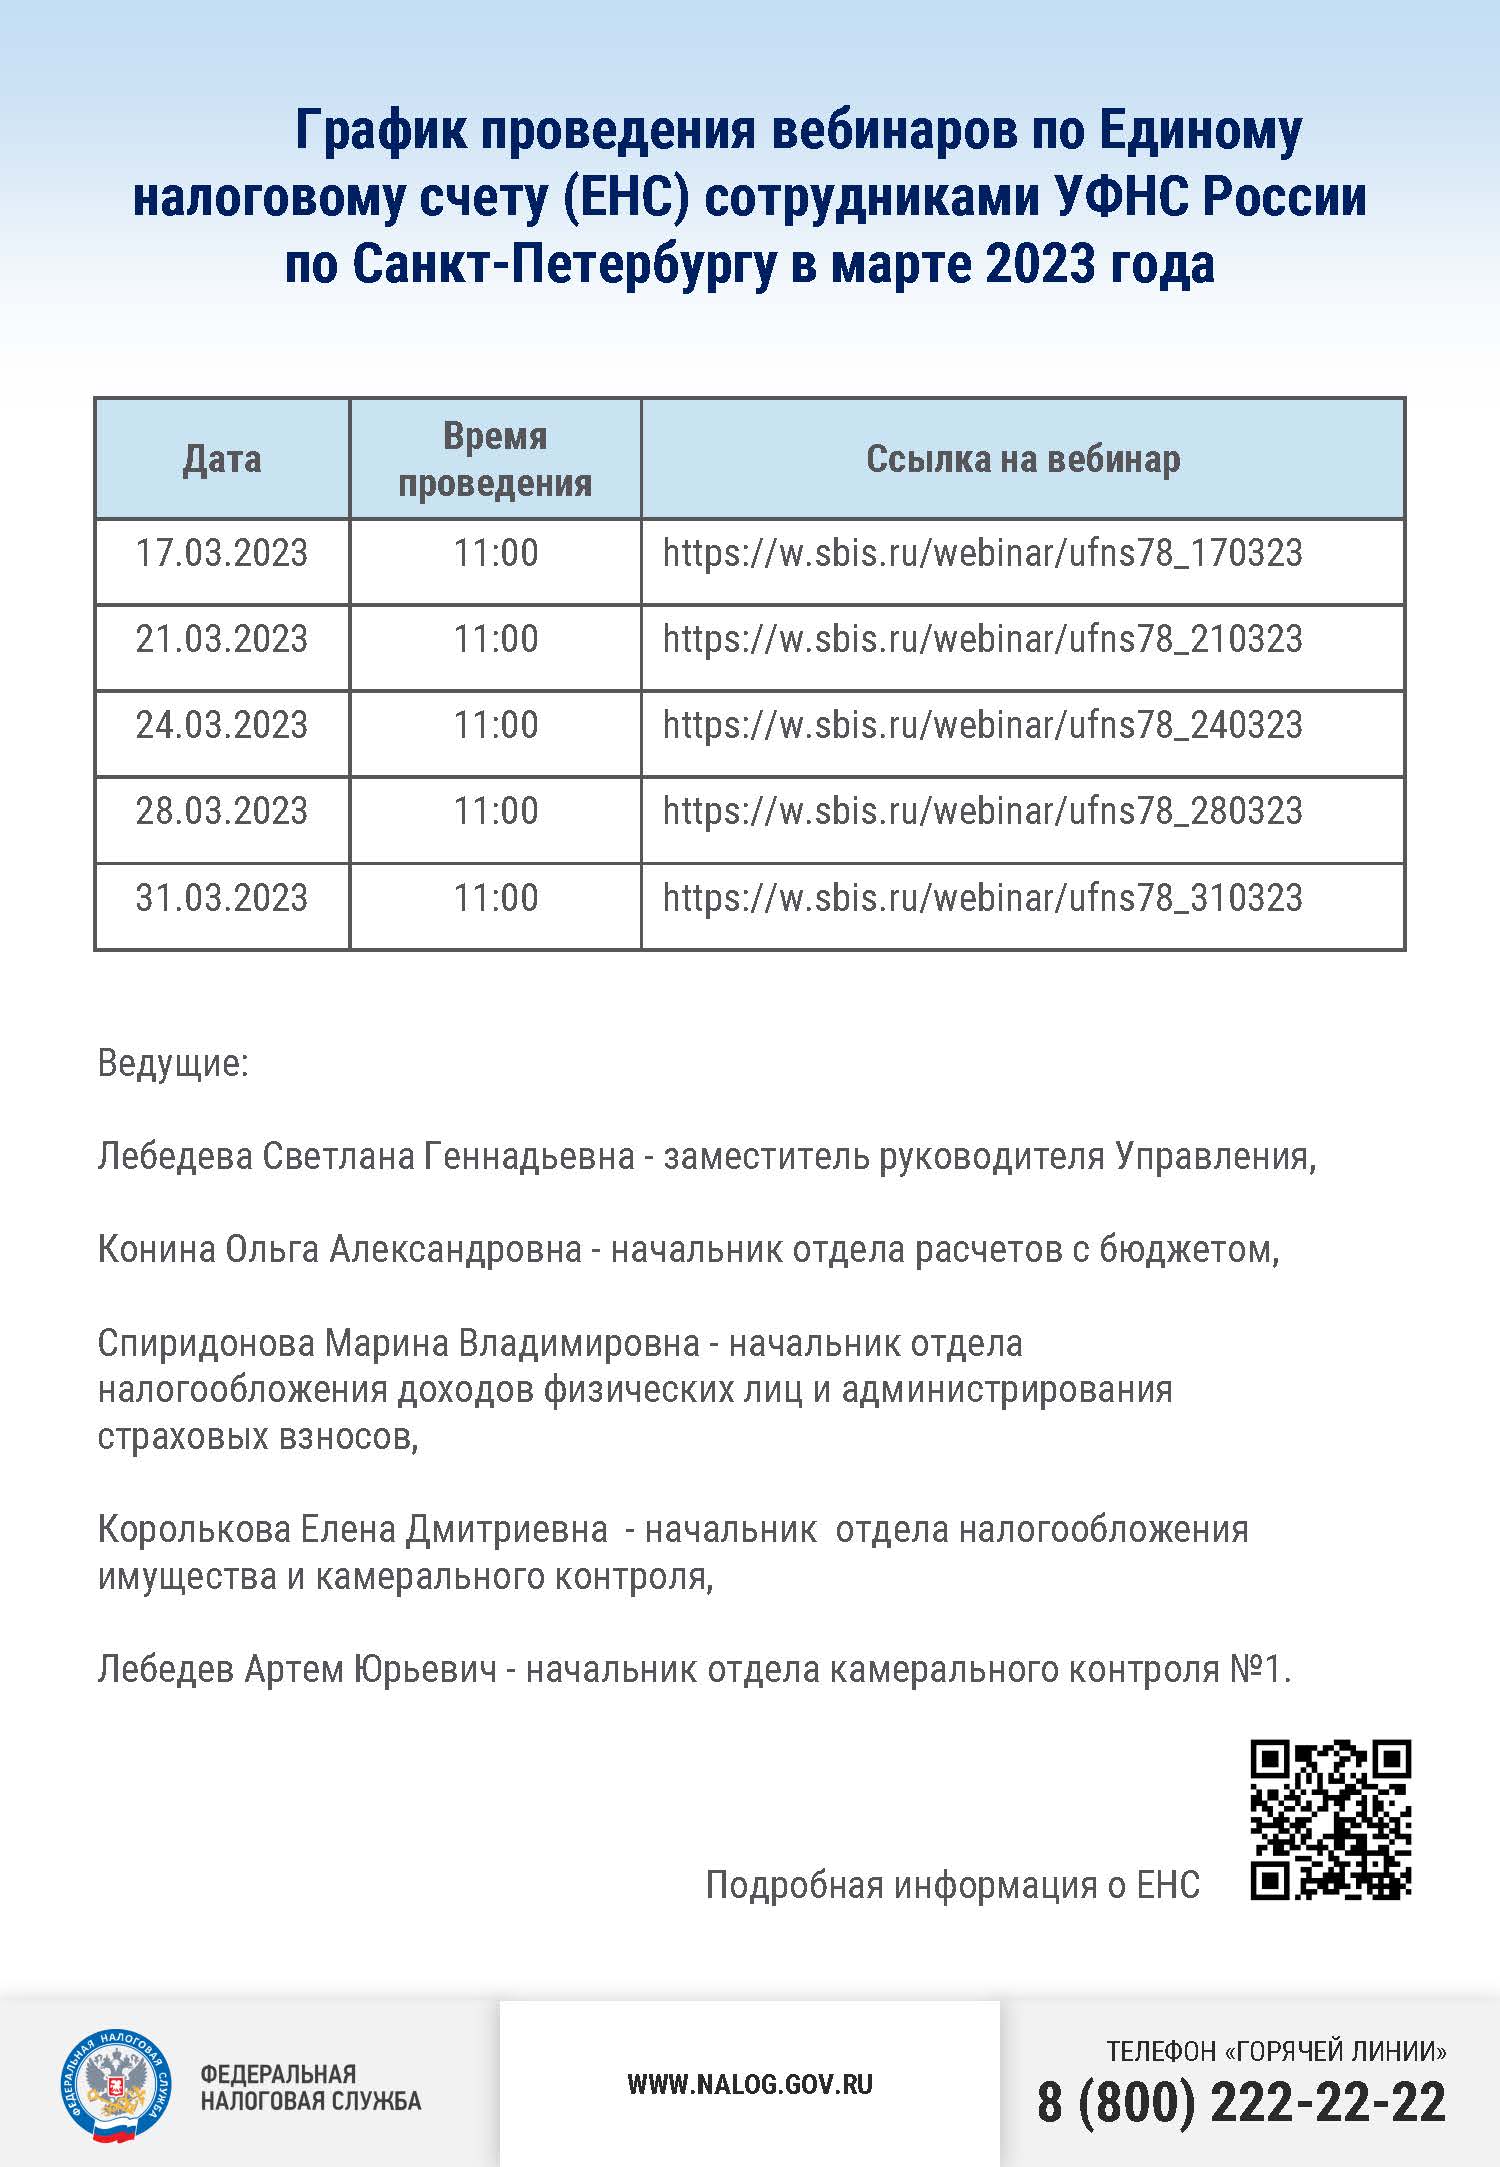 График проведения вебинаров по Единому налоговому счету (ЕНС) сотрудниками УФНС России по Санкт-Петербургу в марте 2023 года